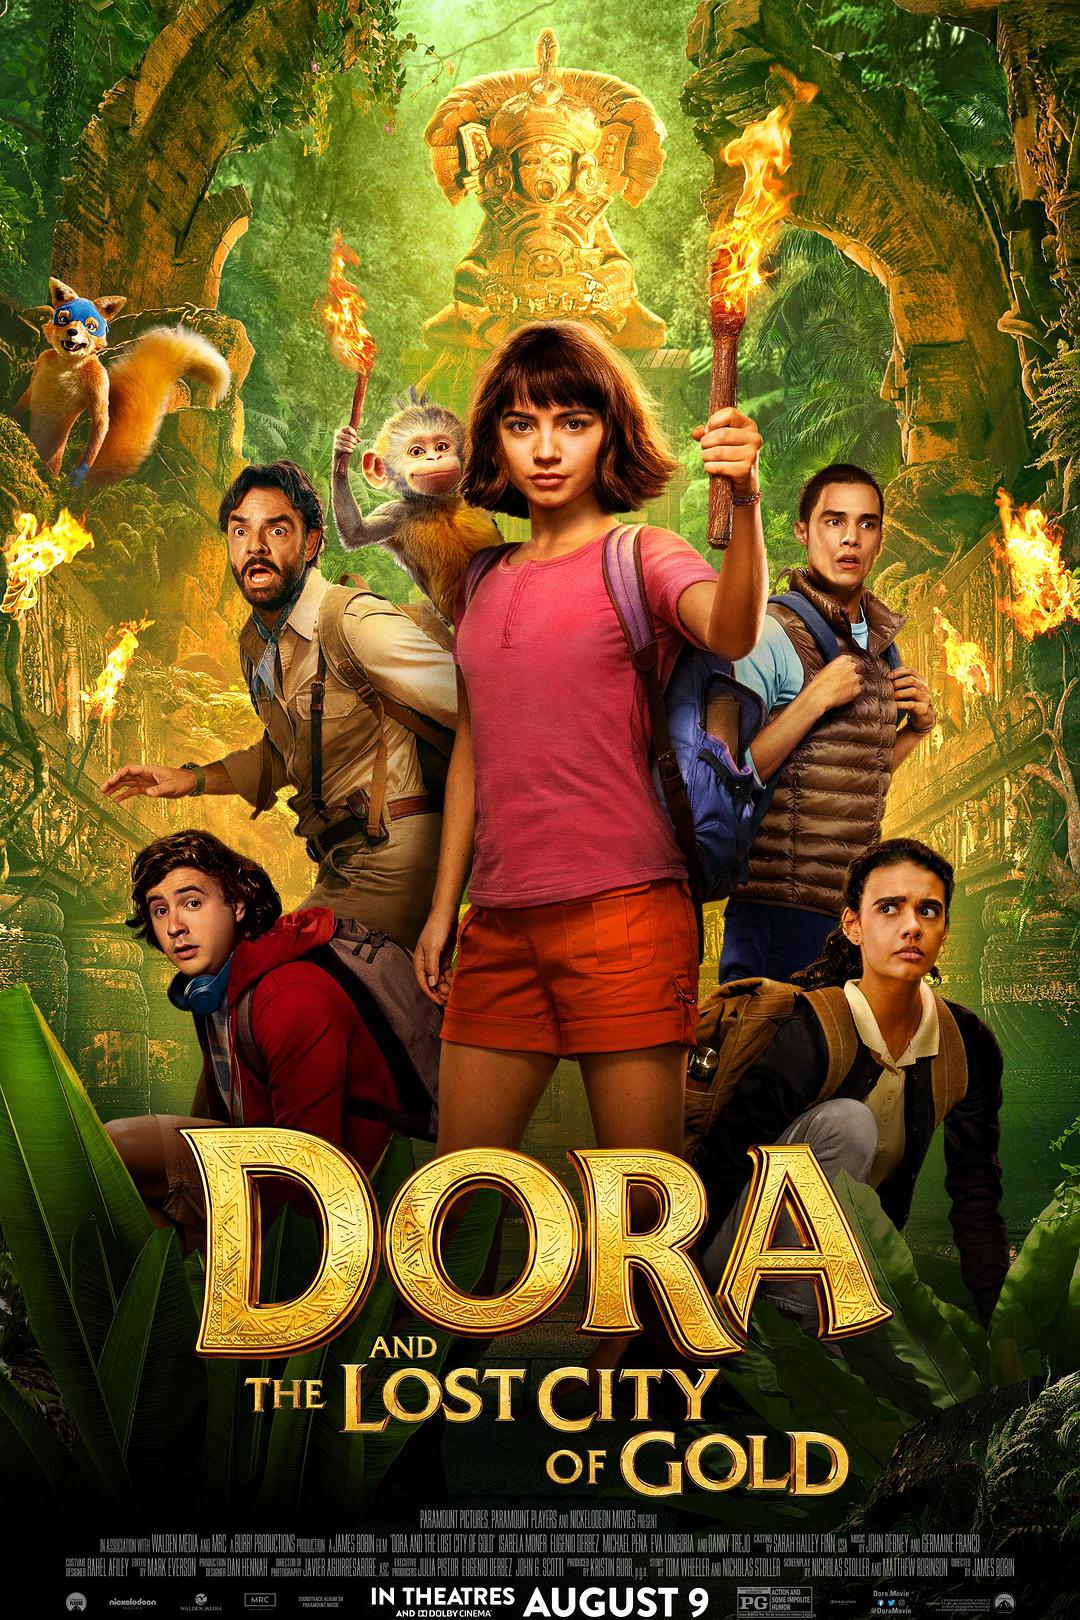 爱探险的朵拉:消失的黄金城 Dora.and.the.Lost.City.of.Gold.2019.1080p.BluRay.x264.DTS-HD.MA.7.1-FGT 11.33GB-1.png